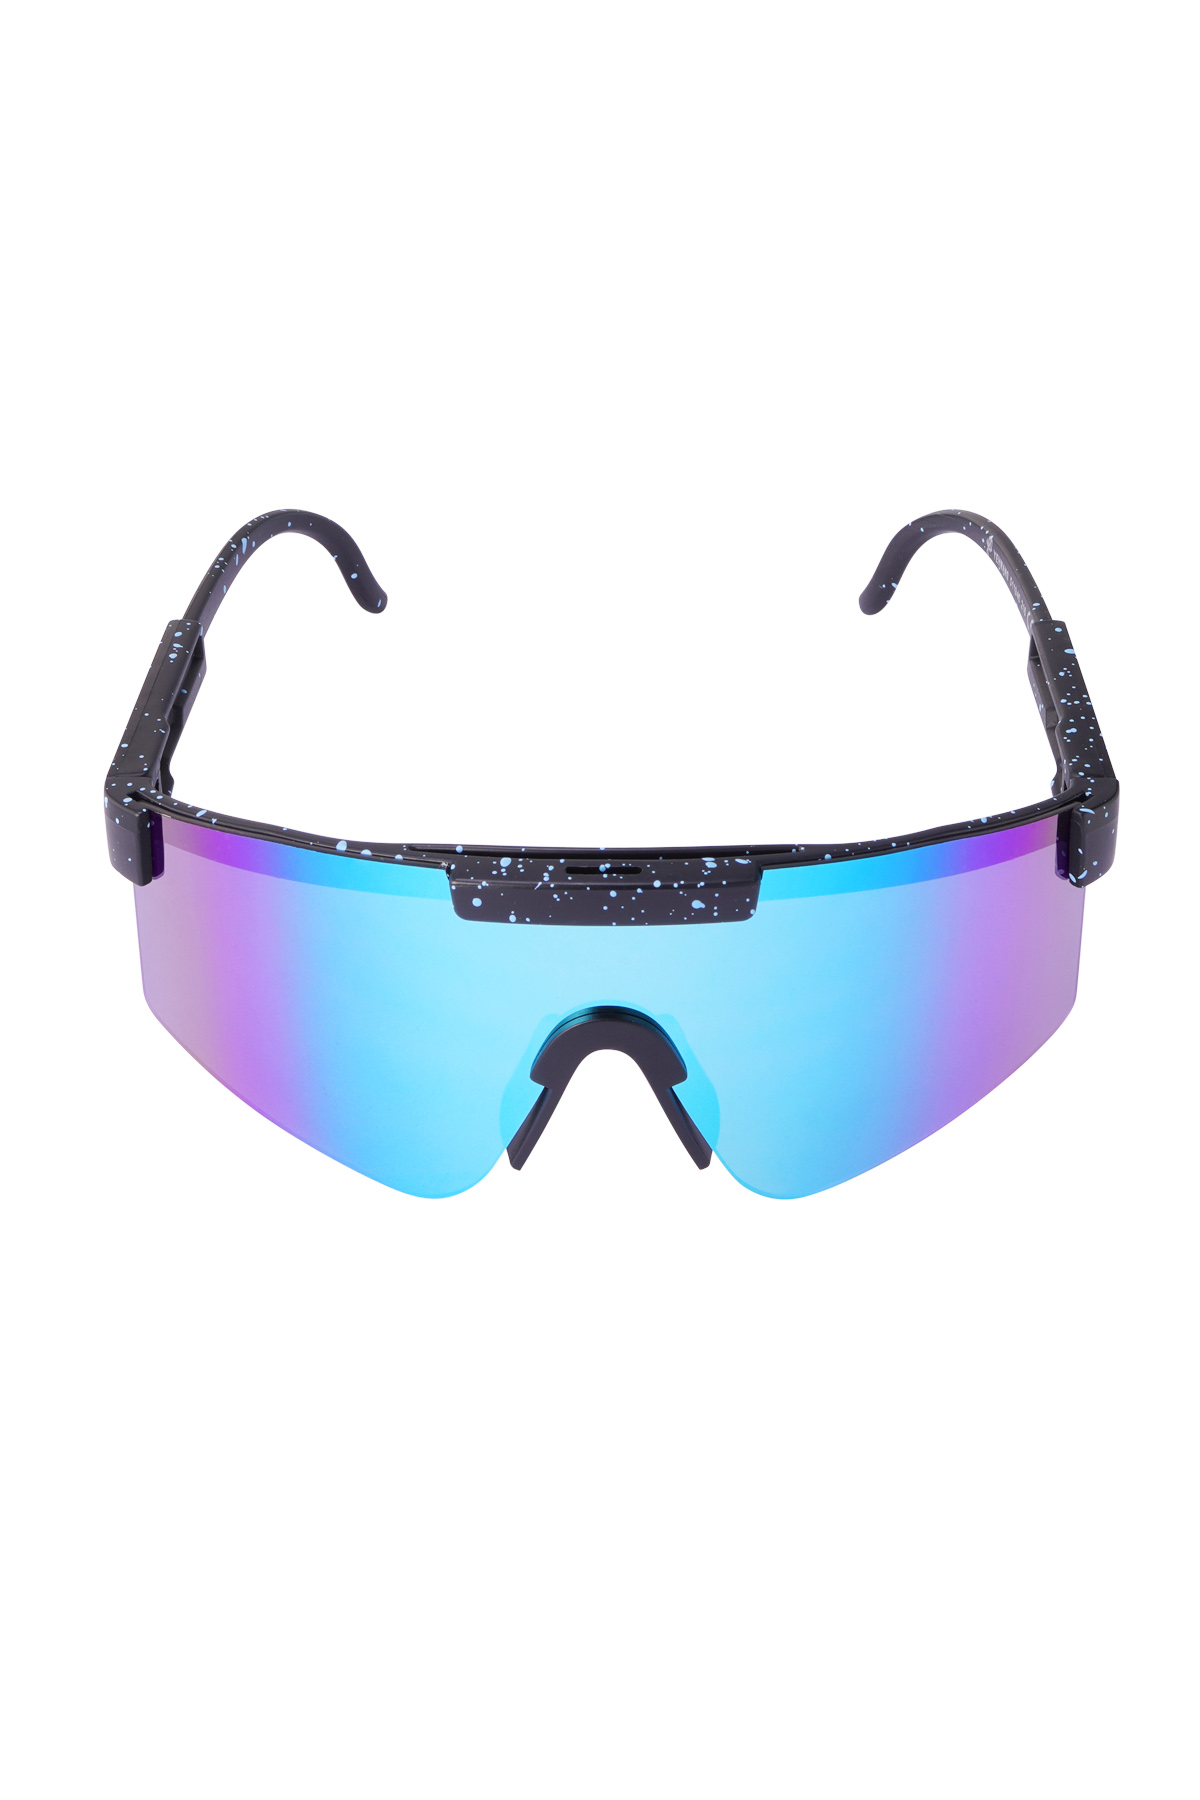 Güneş gözlüğü baskılı renkli lensler - siyah h5 Resim6